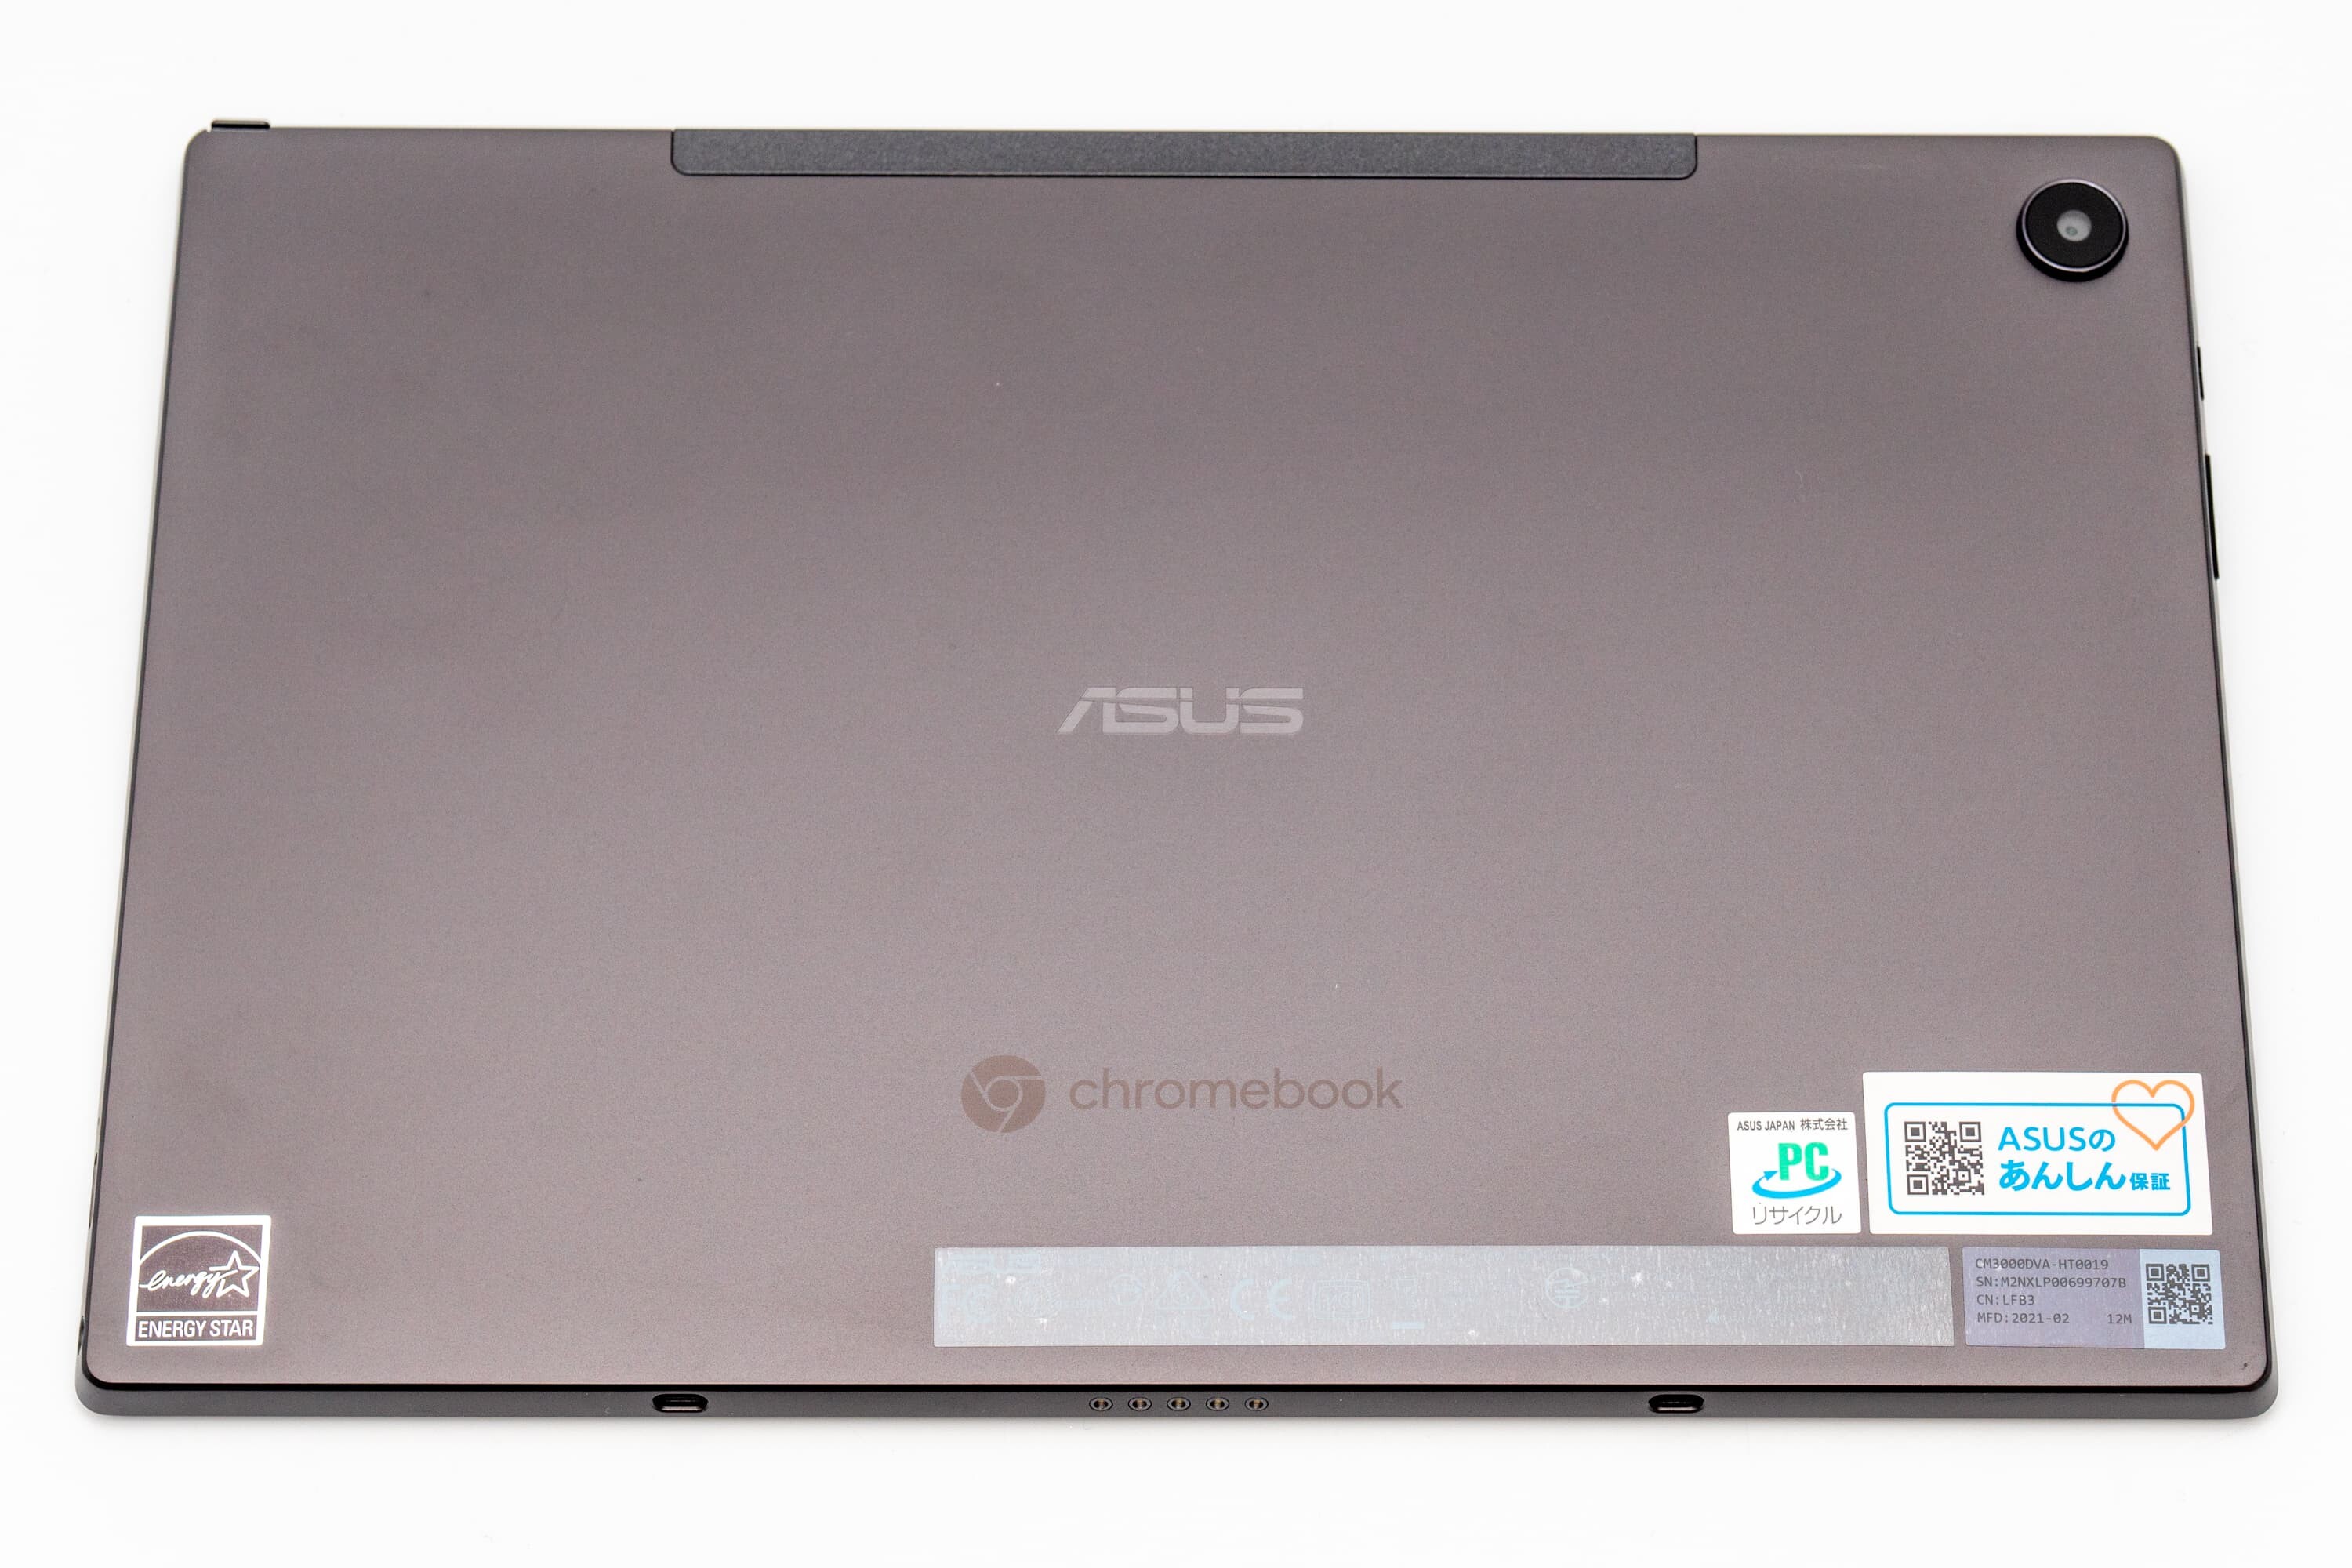 ASUS Chromebook Detachable CM3 レビュー ギミック満載のASUSらしい